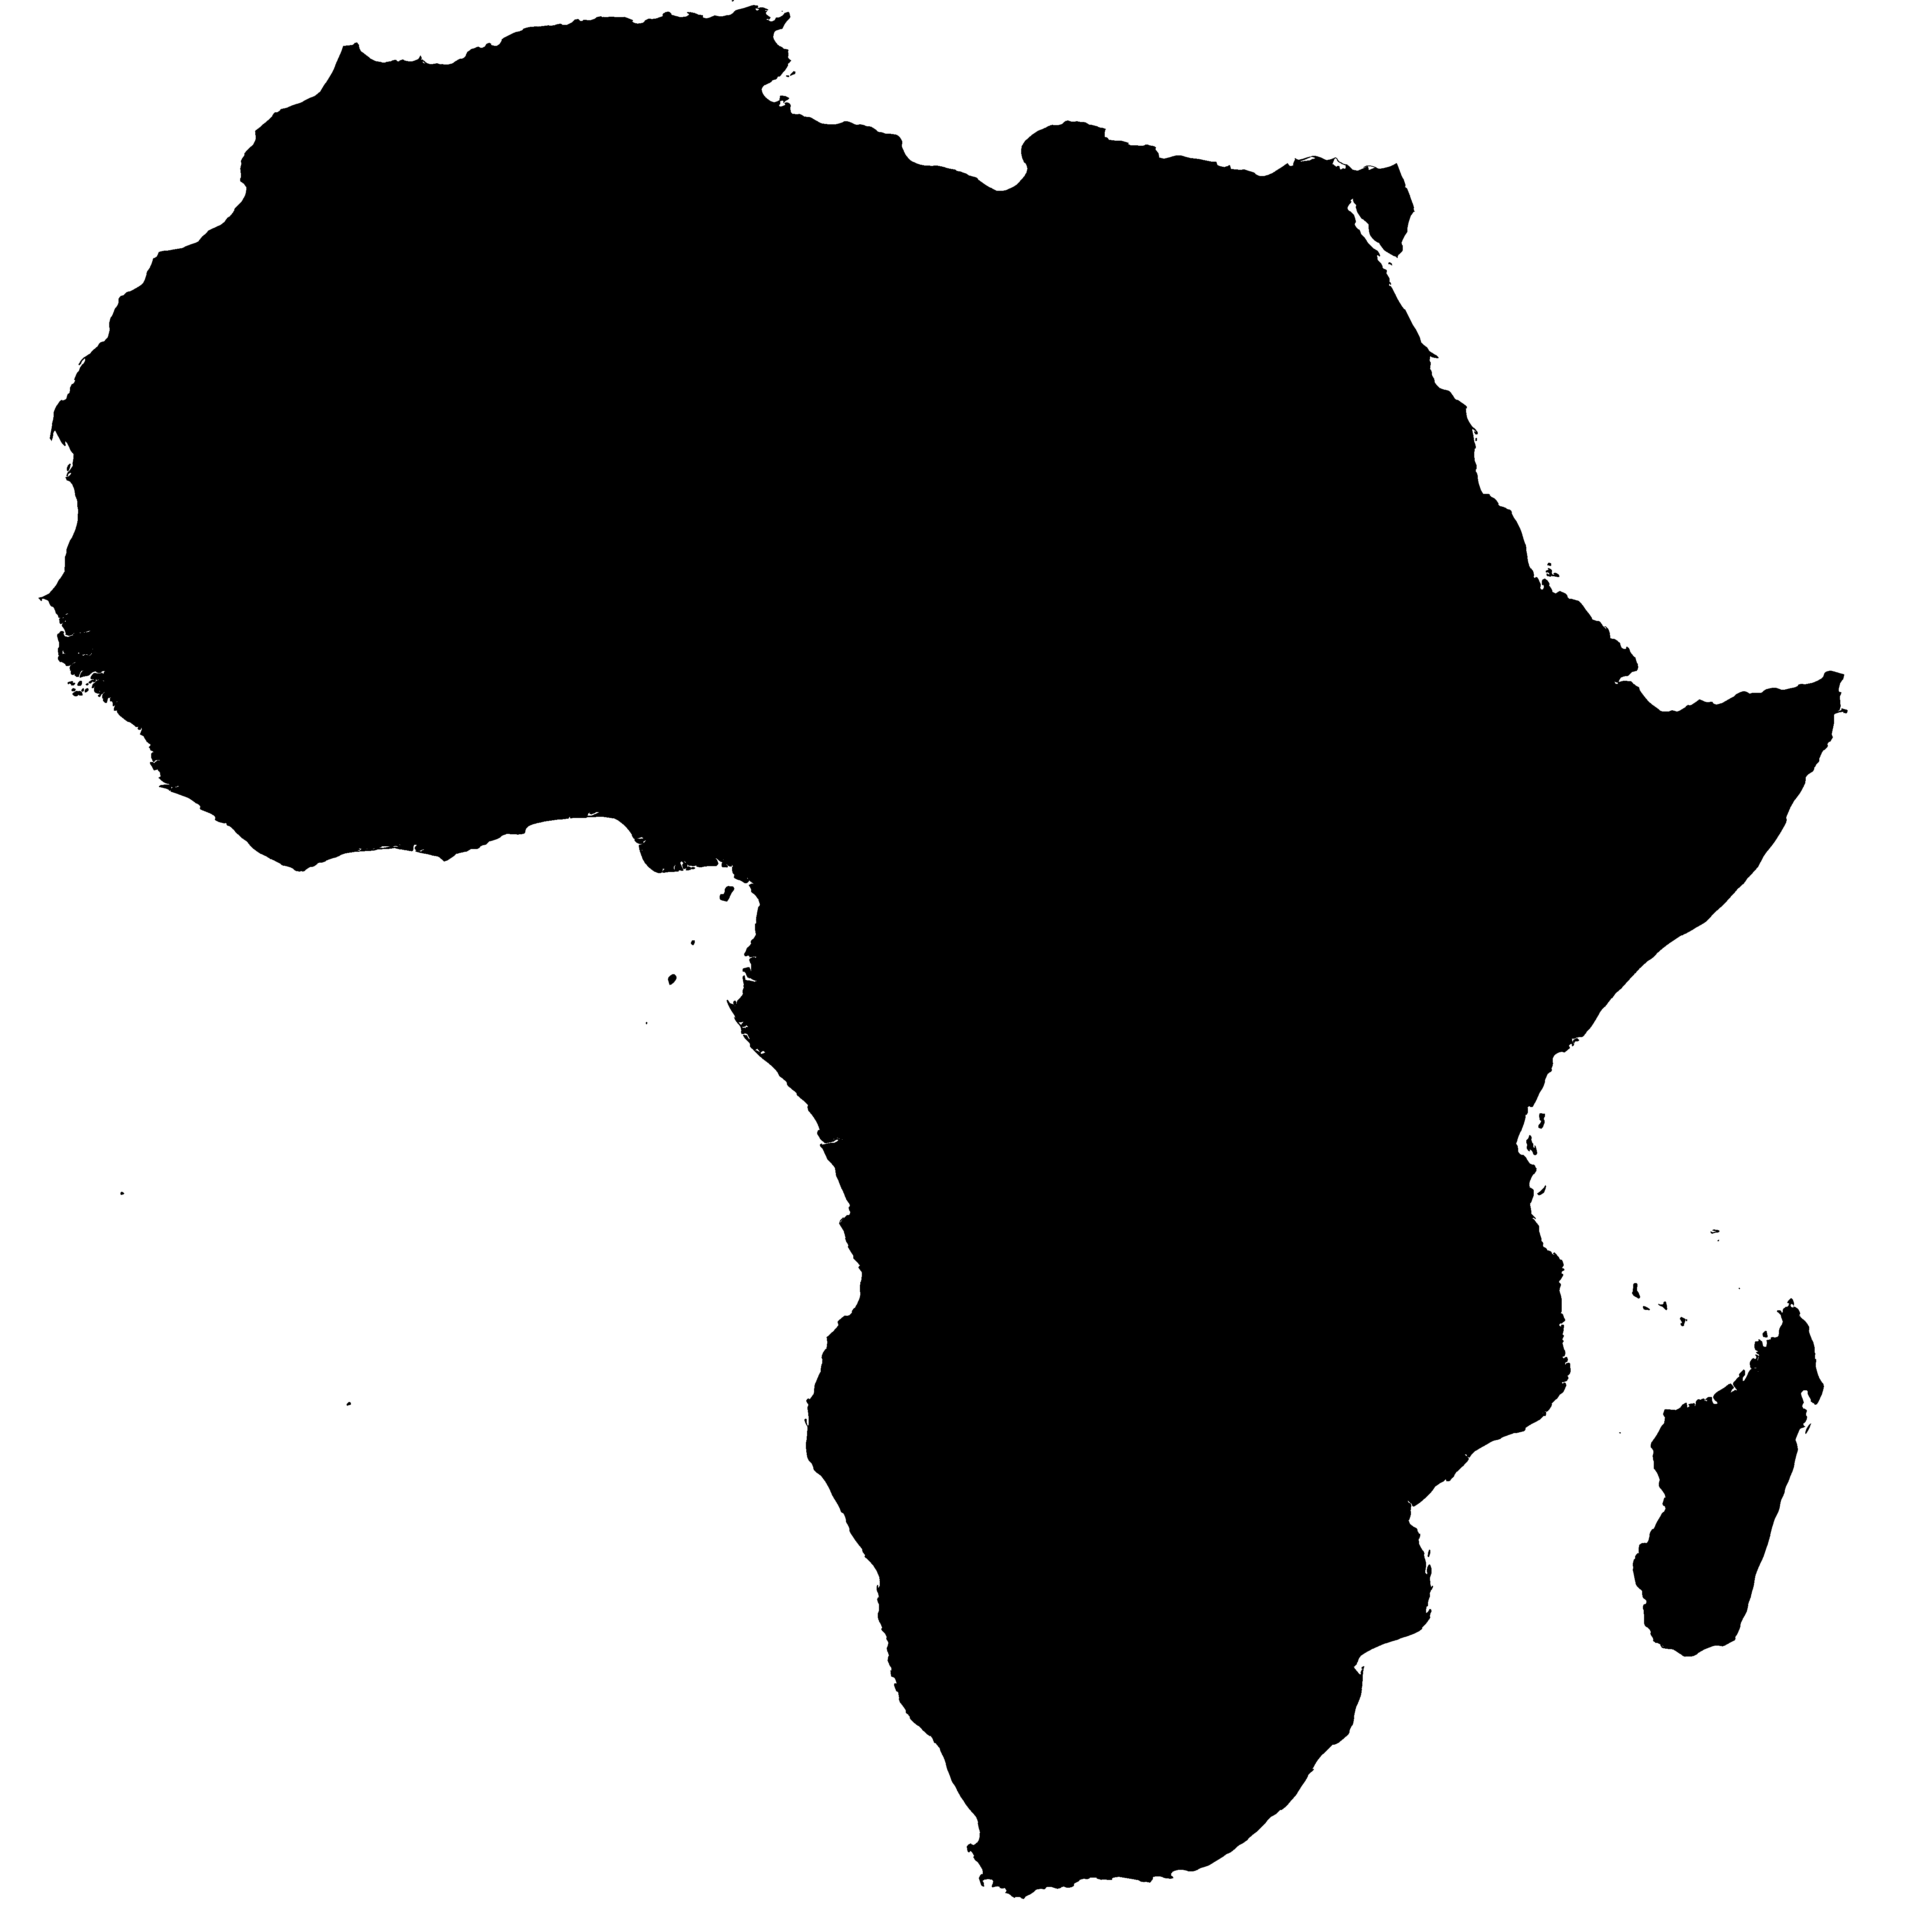 Africa clipart logo. Best 